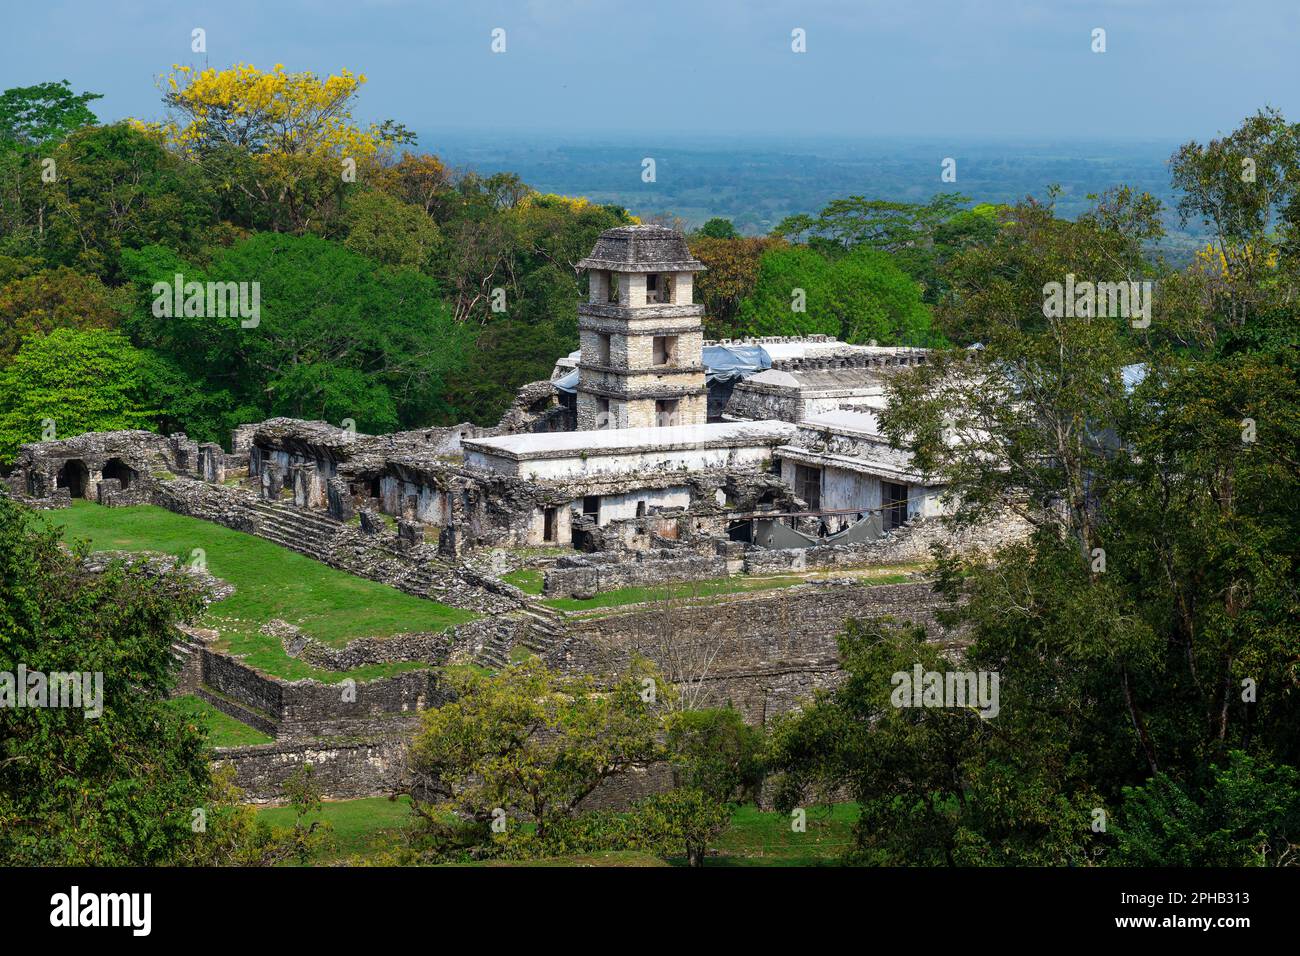 El edificio del palacio en el sitio arqueológico maya de Palenque, Chiapas, México. Foto de stock